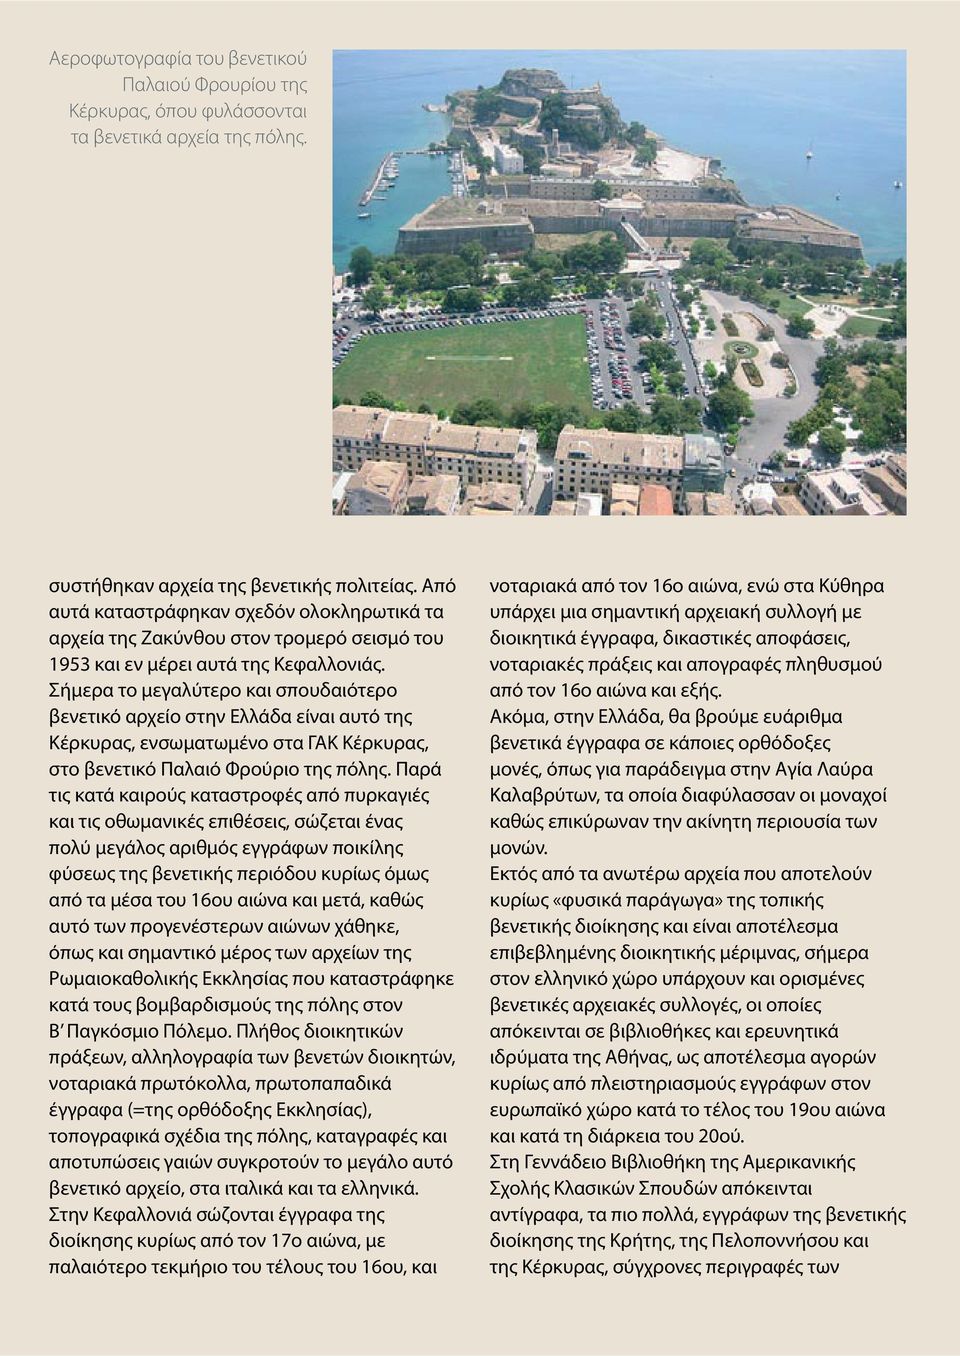 Σήμερα το μεγαλύτερο και σπουδαιότερο βενετικό αρχείο στην Ελλάδα είναι αυτό της Κέρκυρας, ενσωματωμένο στα ΓΑΚ Κέρκυρας, στο βενετικό Παλαιό Φρούριο της πόλης.